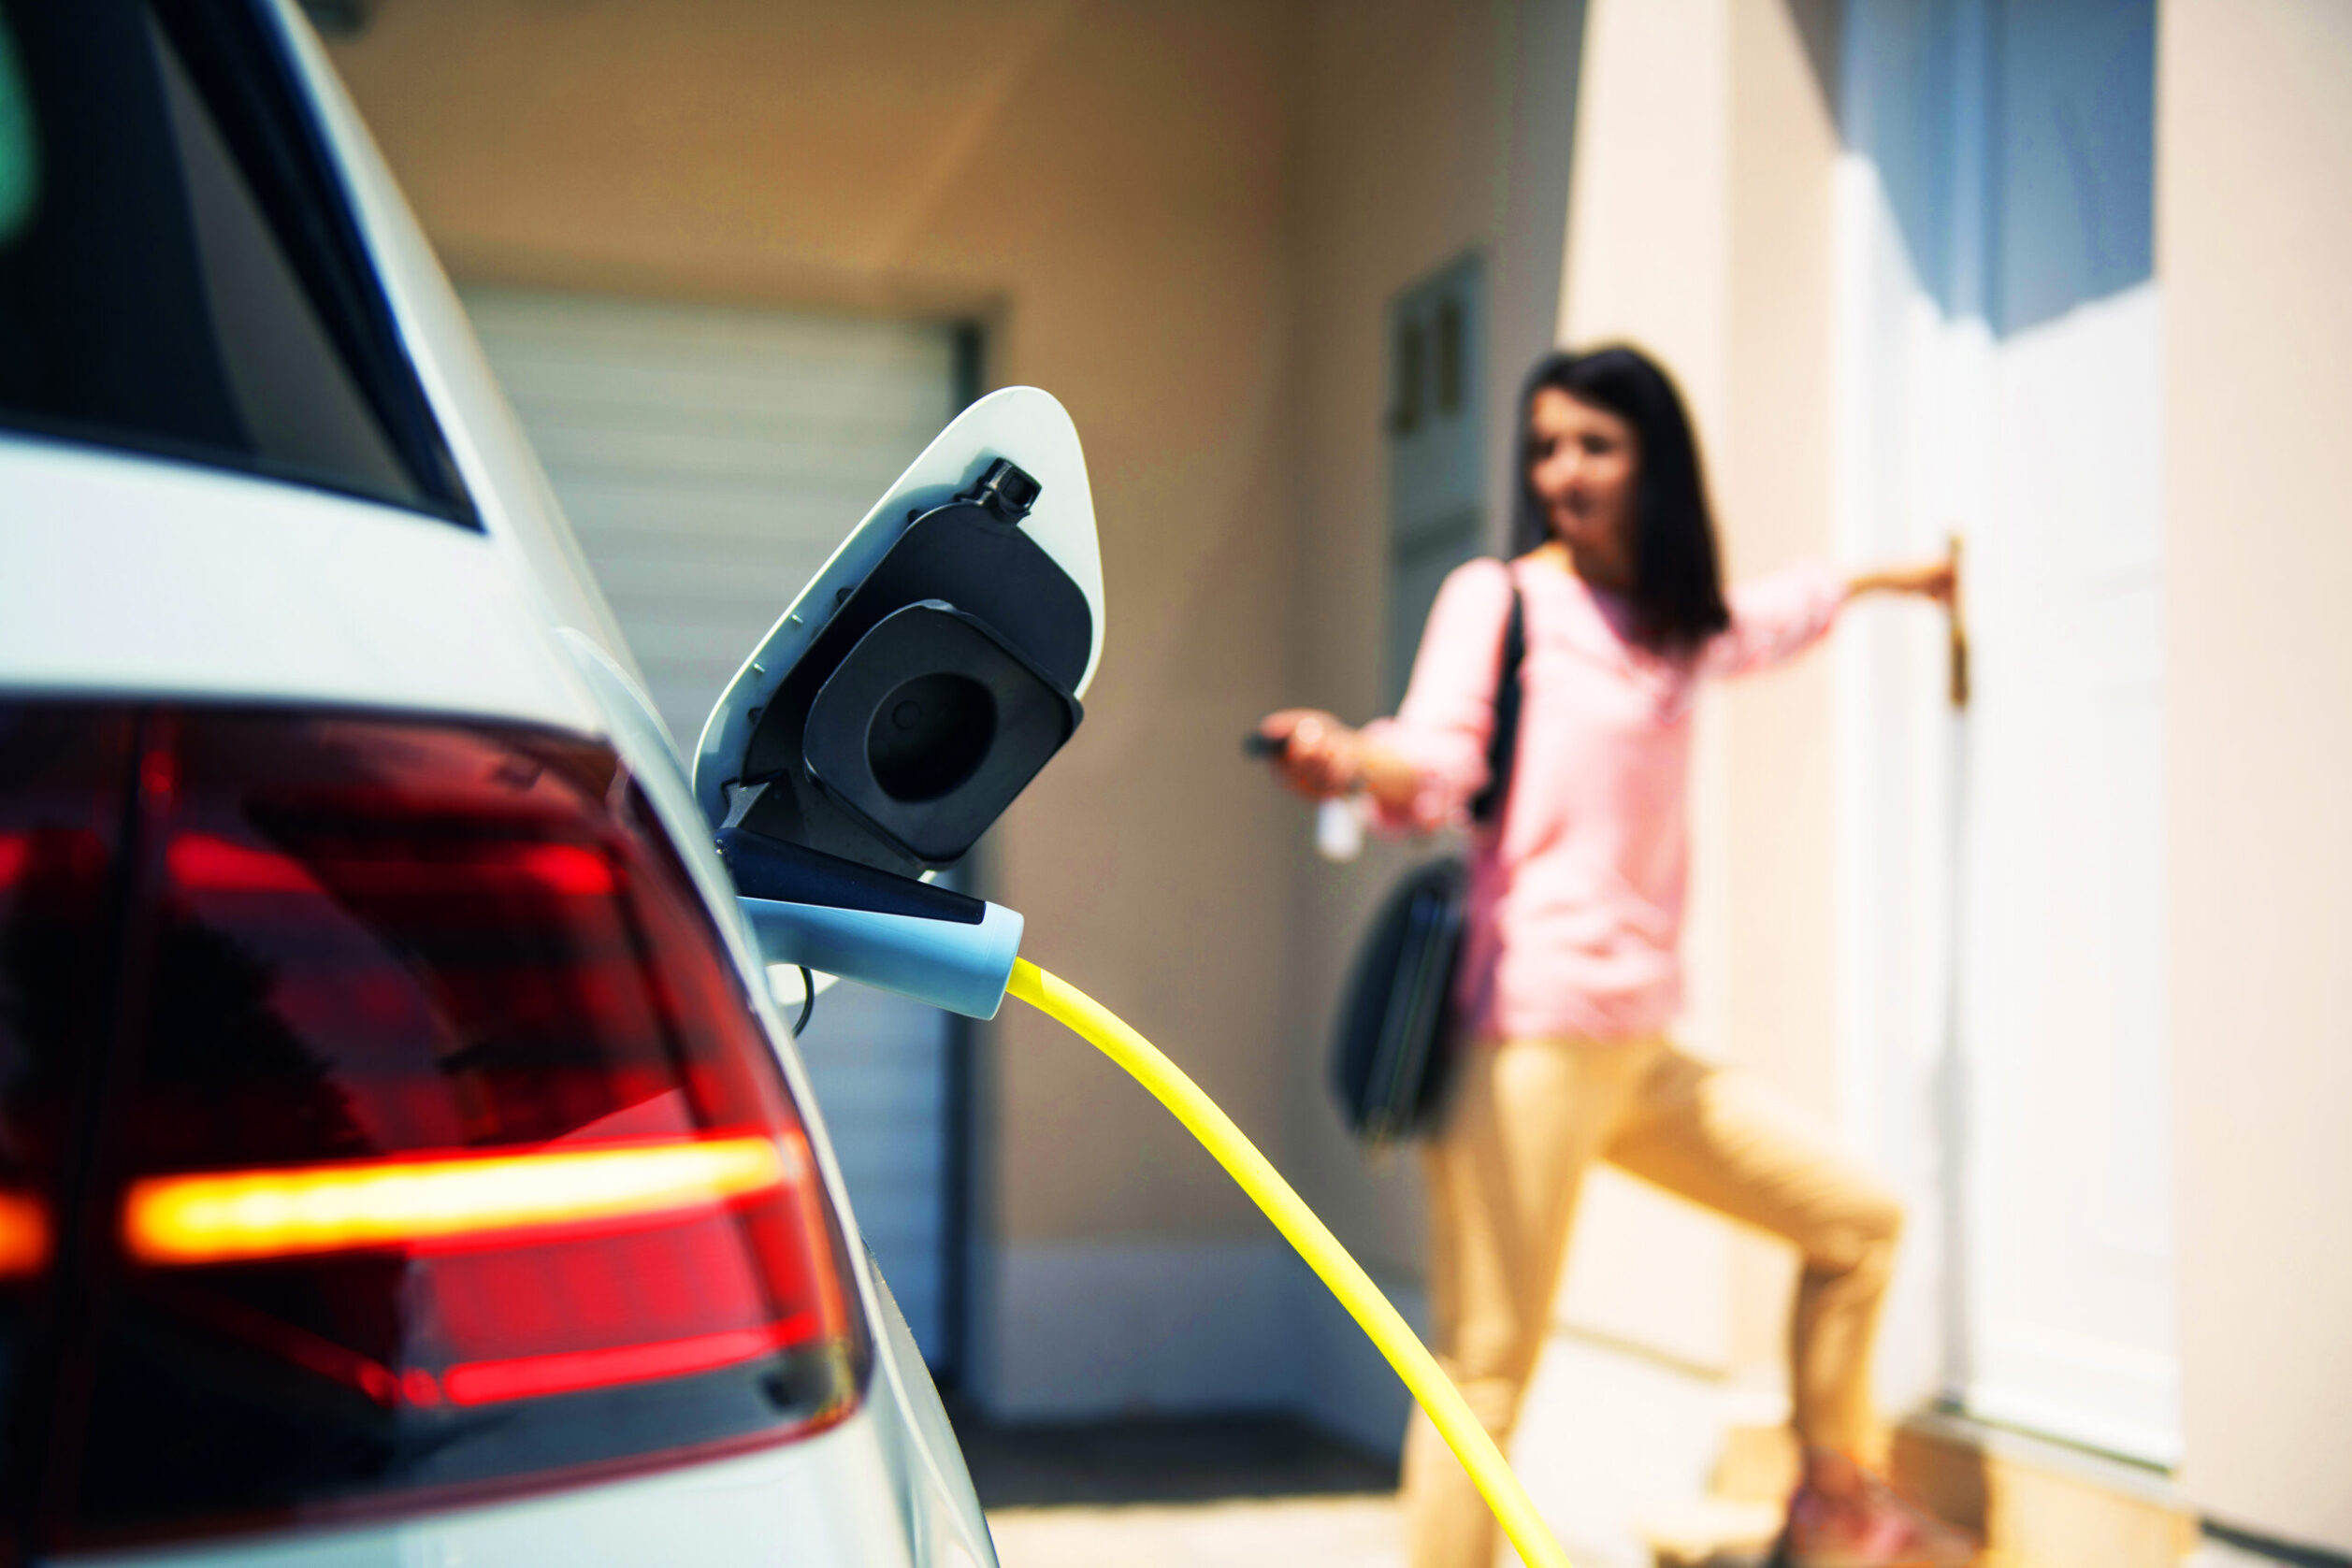 Qu'est qu'une pompe à chaleur dans une voiture électrique?